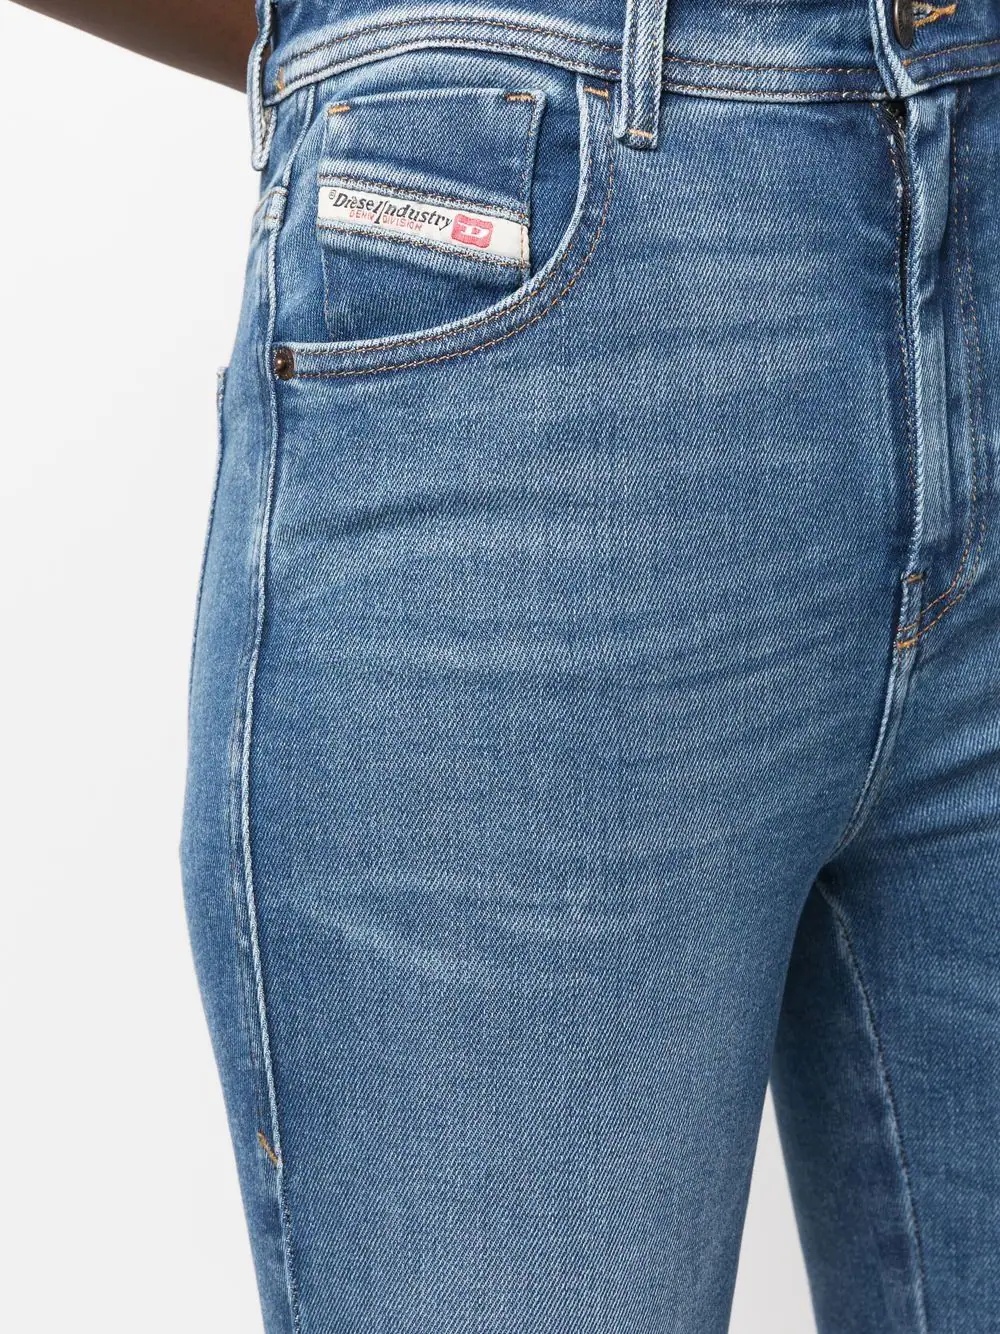 1984 Slandy high-waisted skinny jeans - 5